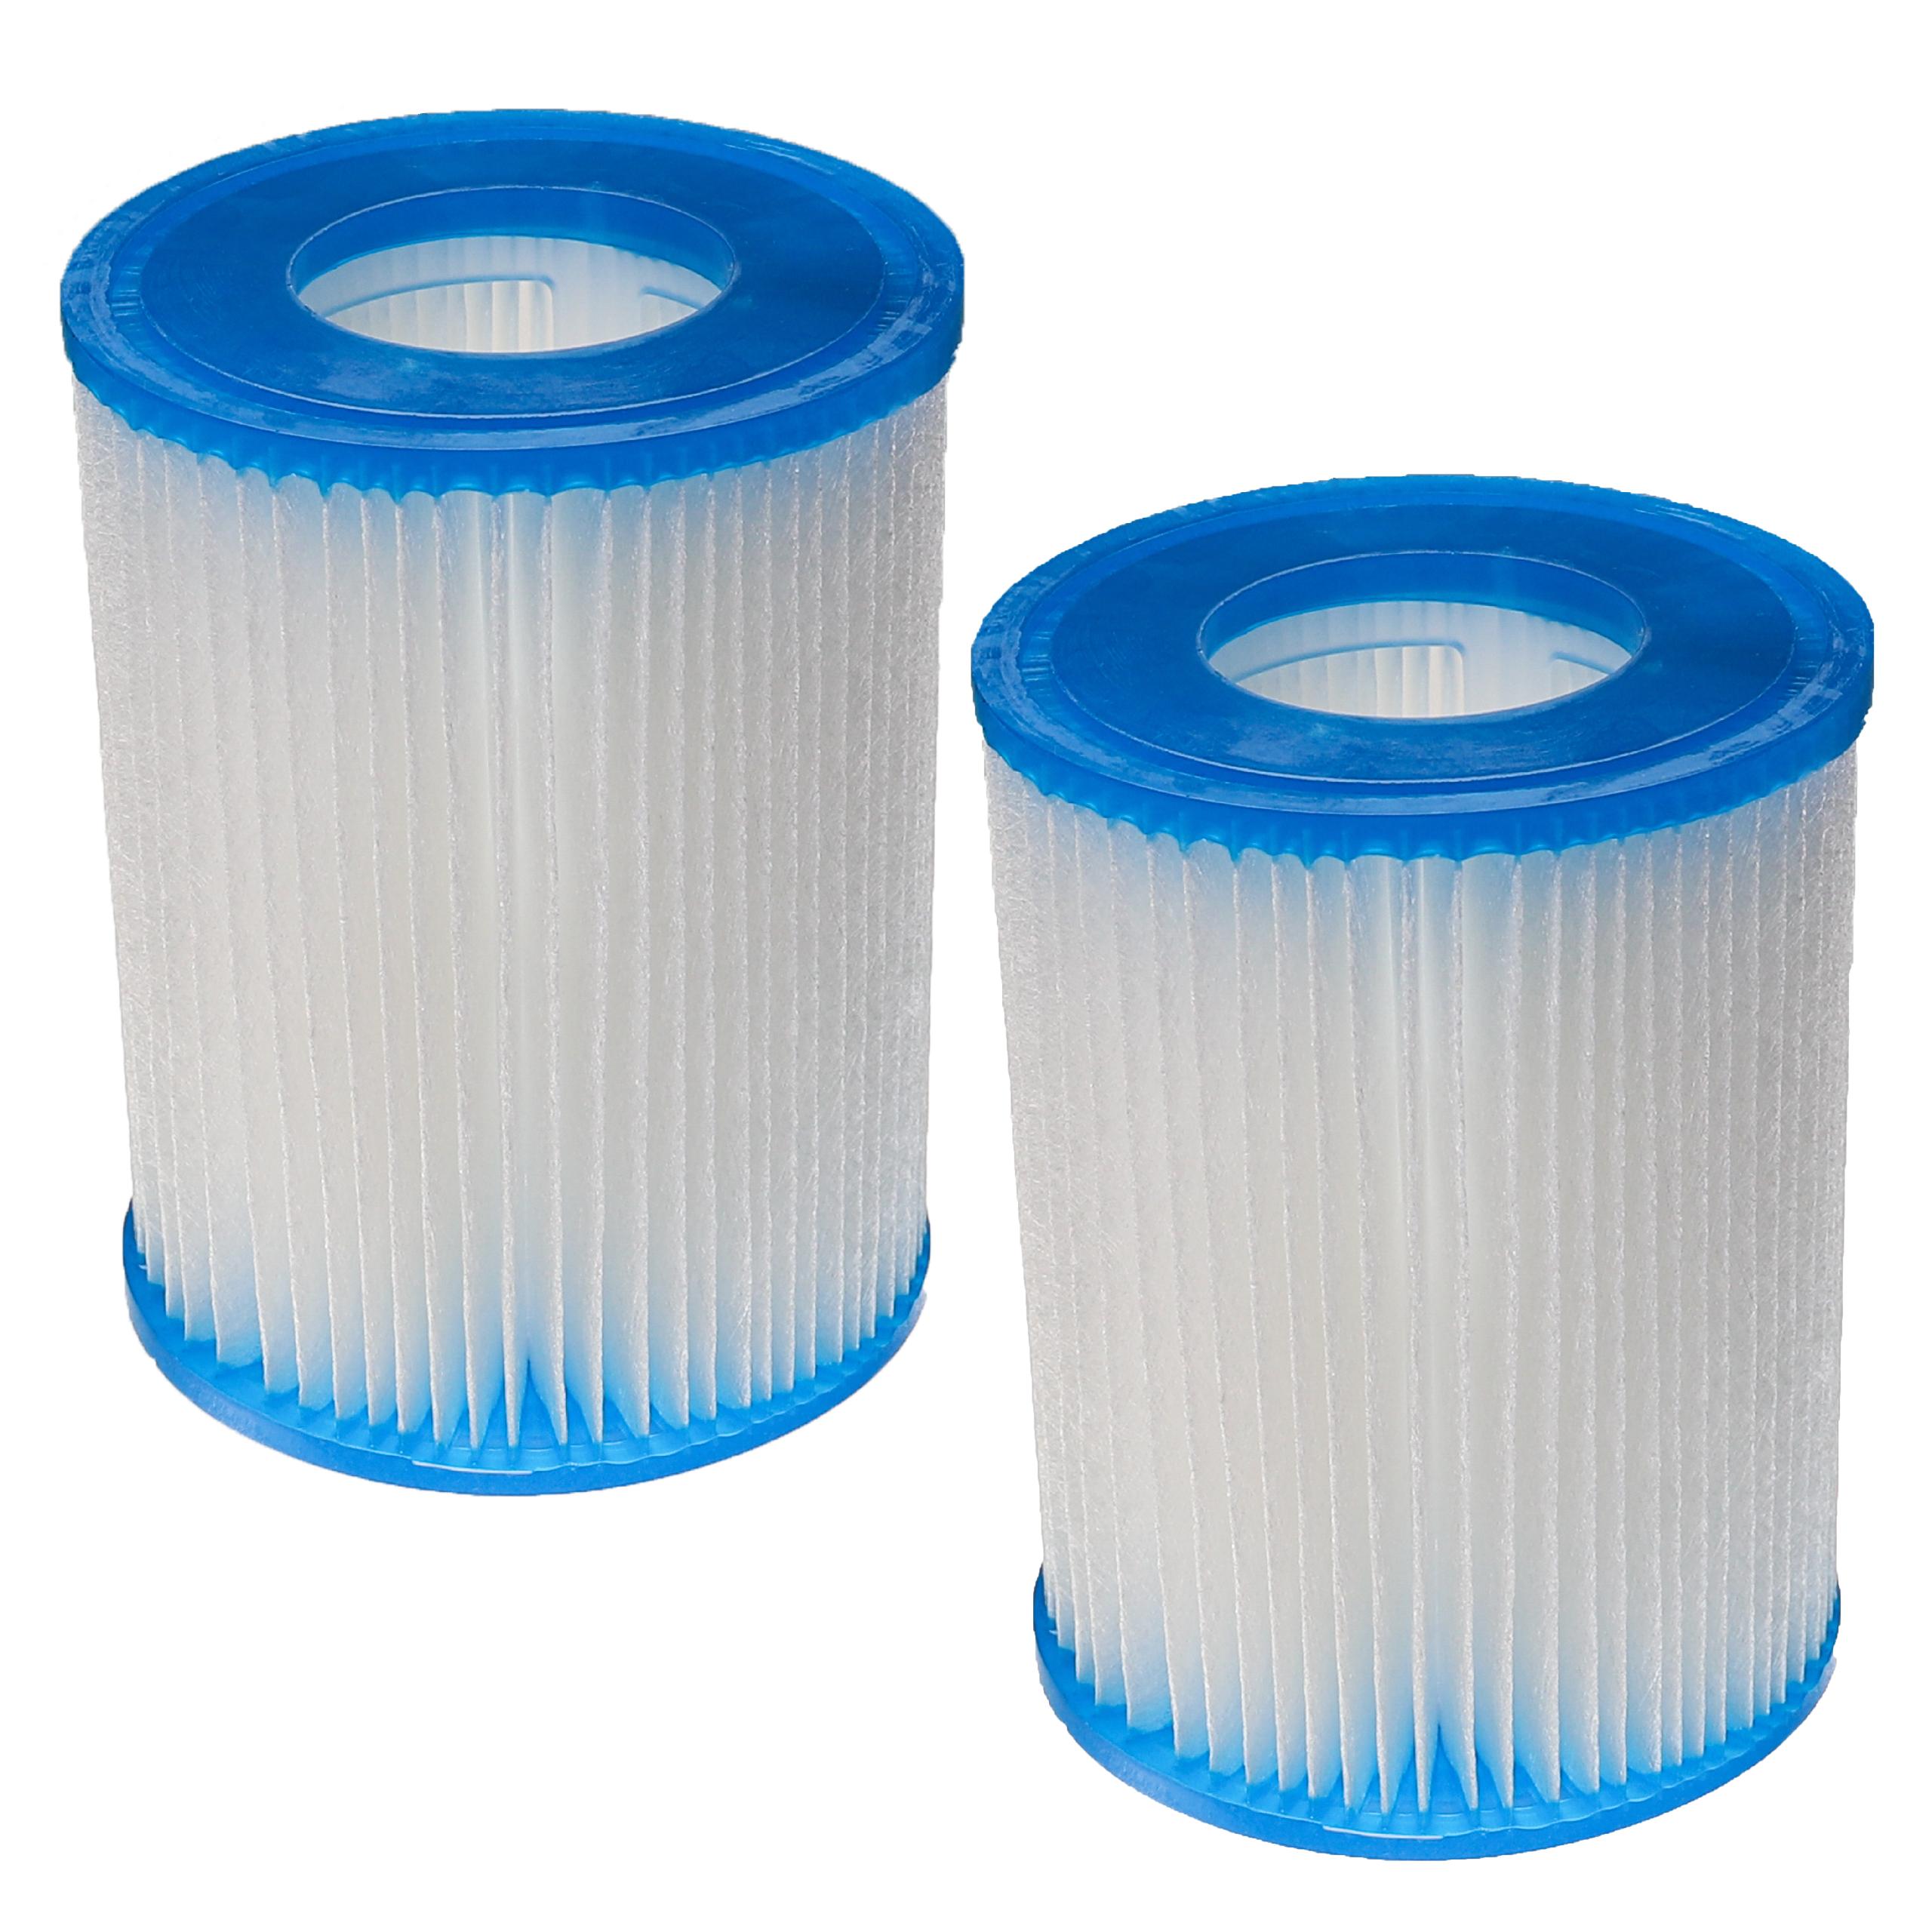 2x filtro de agua reemplaza Bestway FD2137, Typ II para piscina y bomba de filtro Bestway - Cartucho de filtro